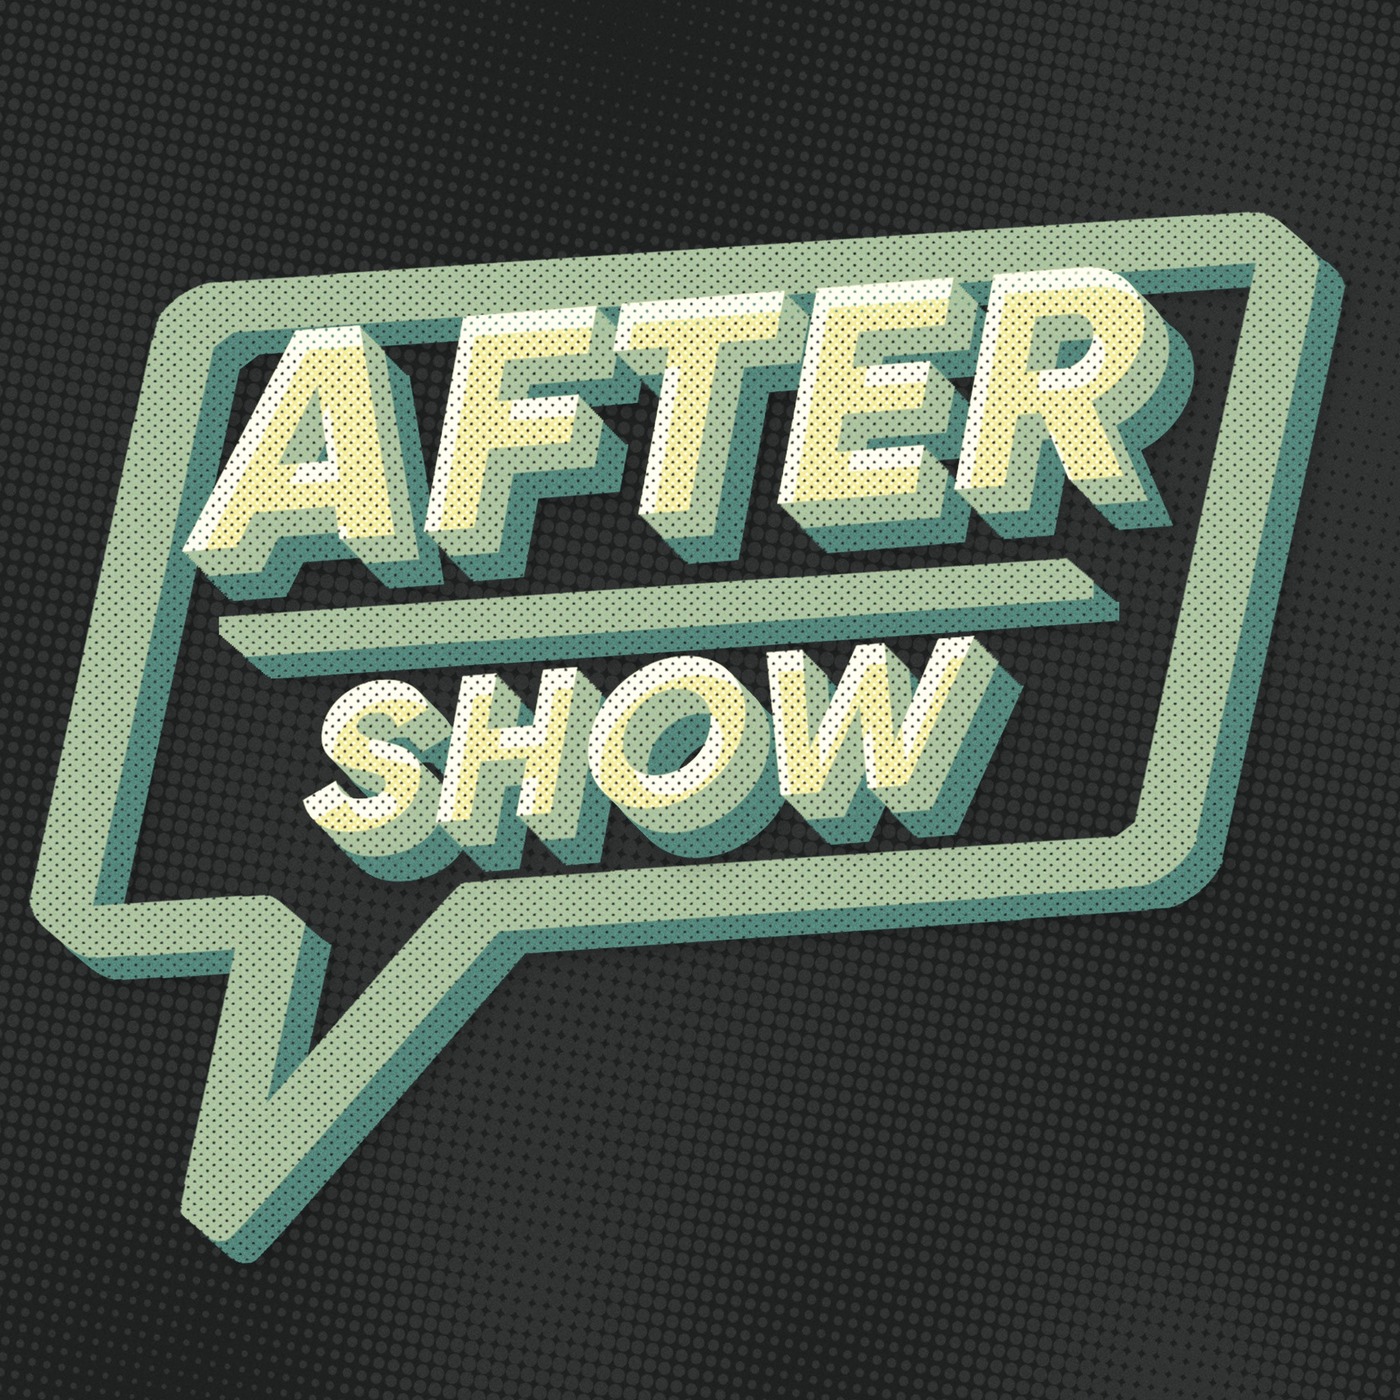 Andor Episode 10 Aftershow